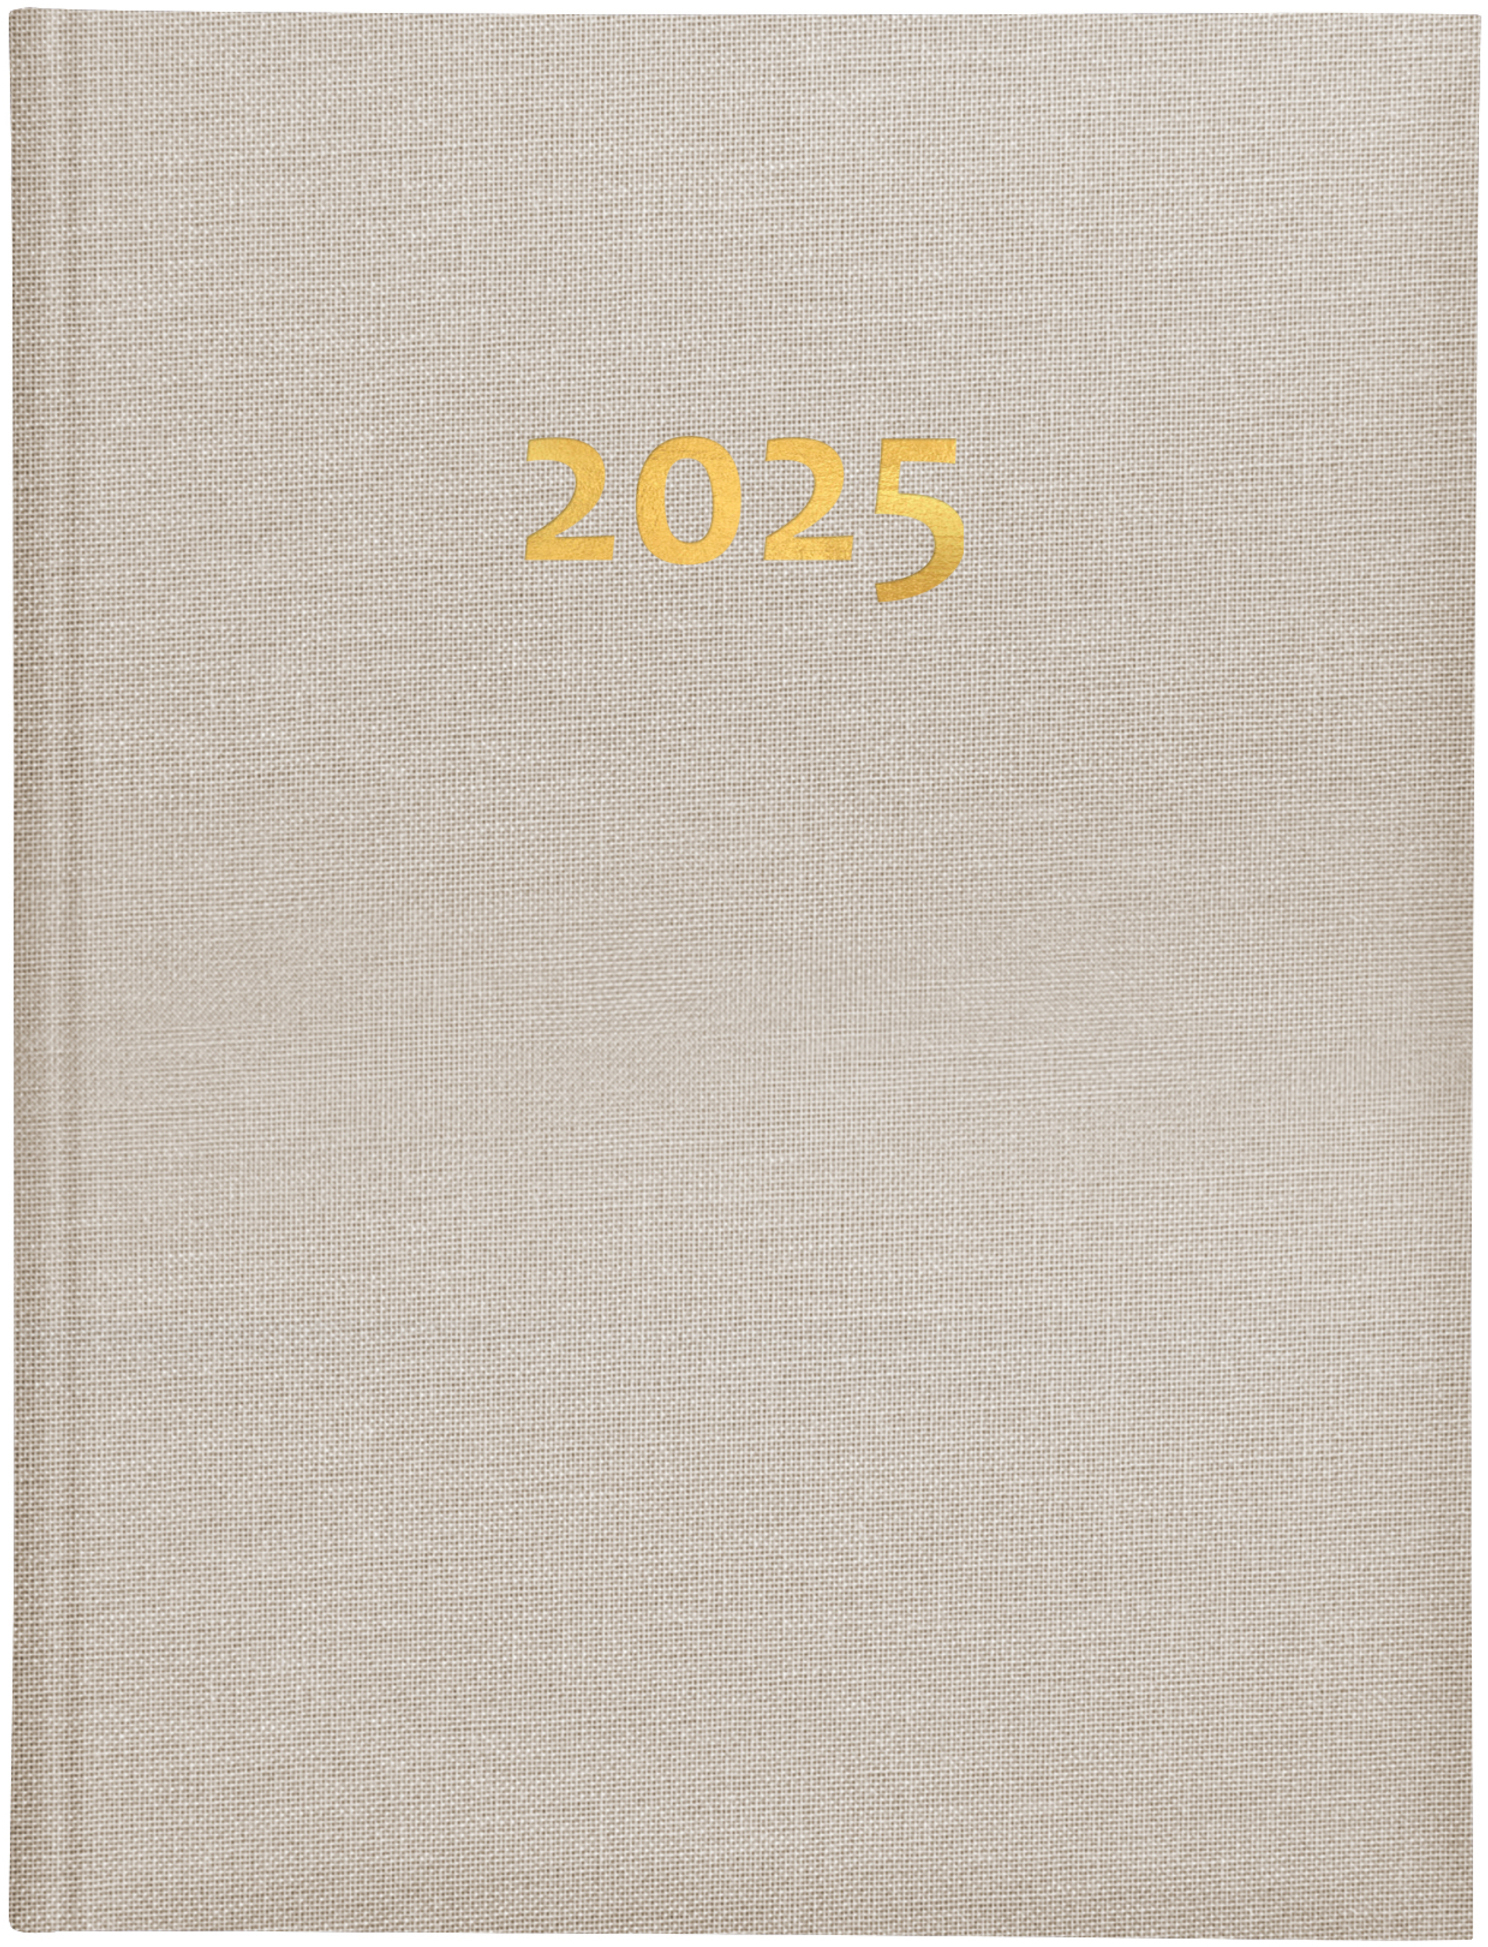 BIELLA Agenda Orario 2025 809301100025 1S/2P beige ML 17.8x23.5cm